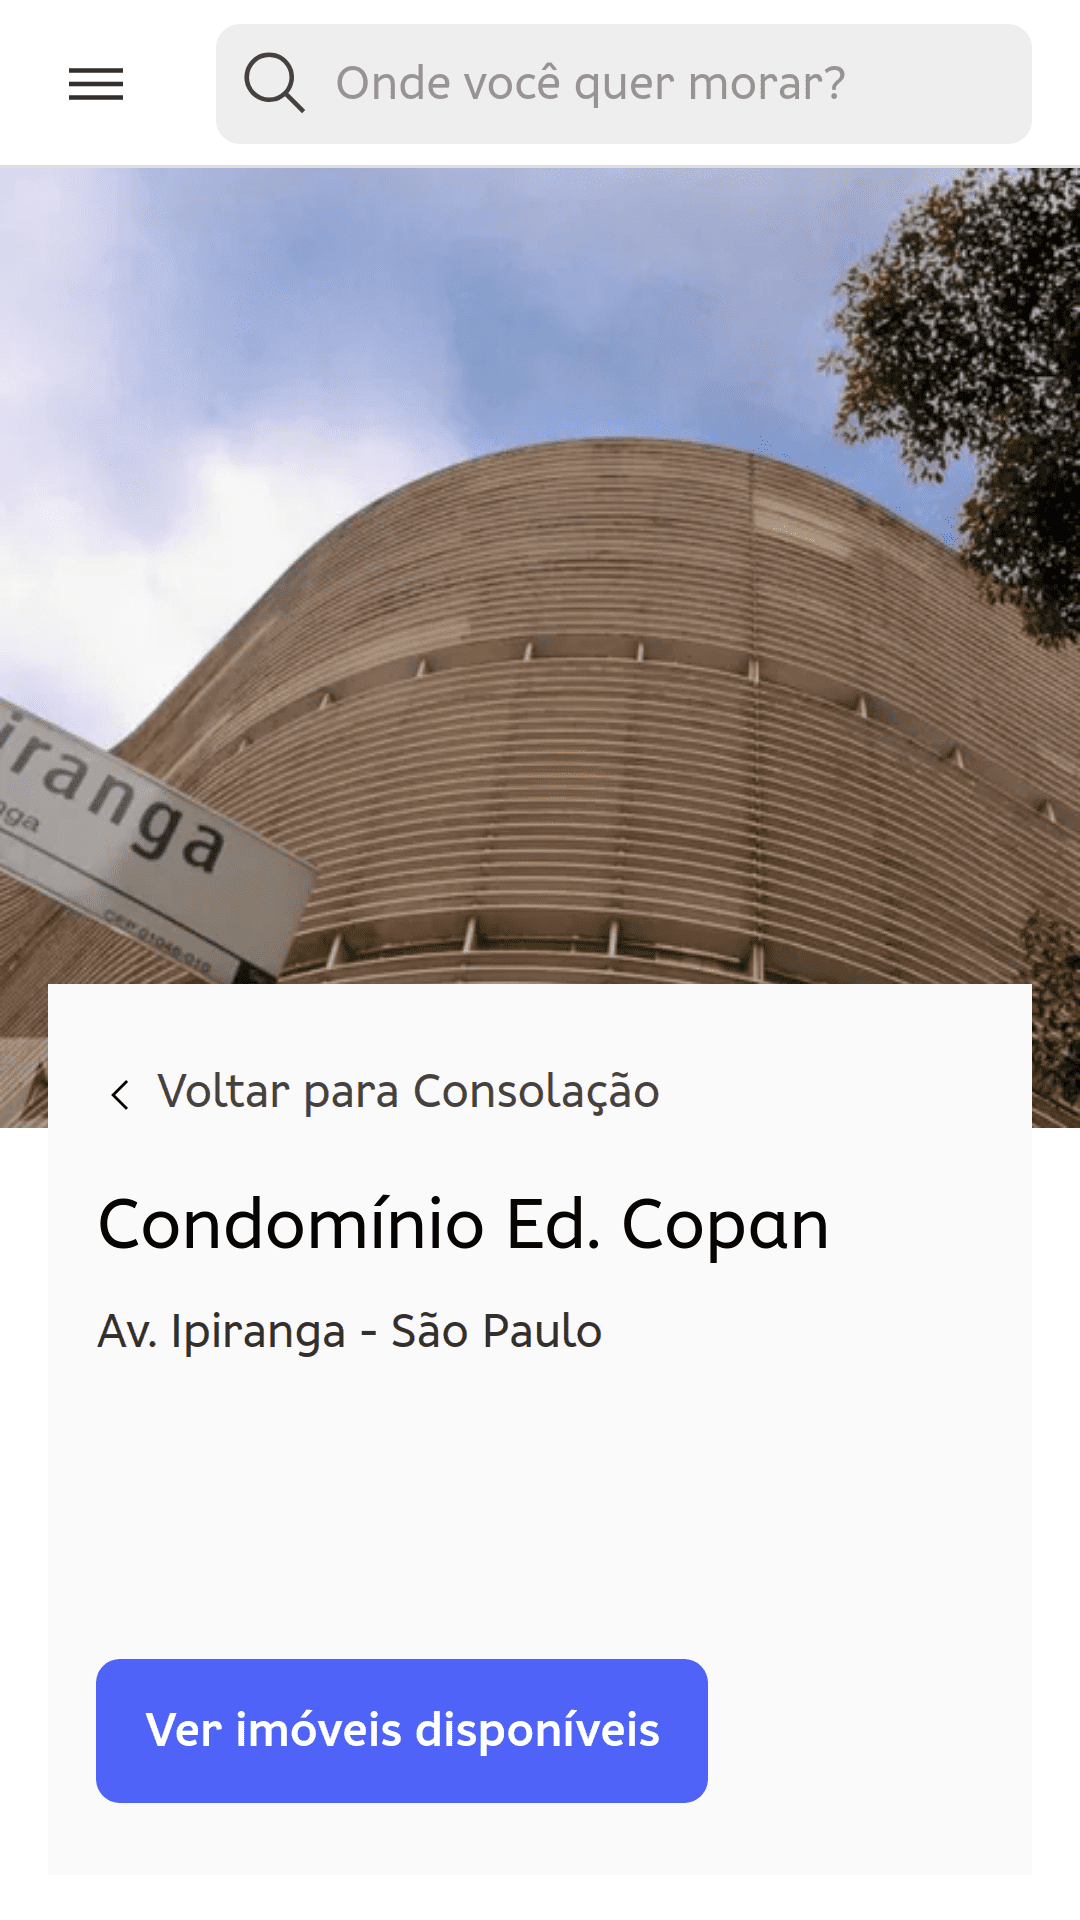 صفحة الوحدات السكنية الخاصة بمجمّع Edifício Copan (ساو باولو، البرازيل). تعرض صورة يتم التقاطها على مستوى الأرض منحنيات هيكل المبنى.